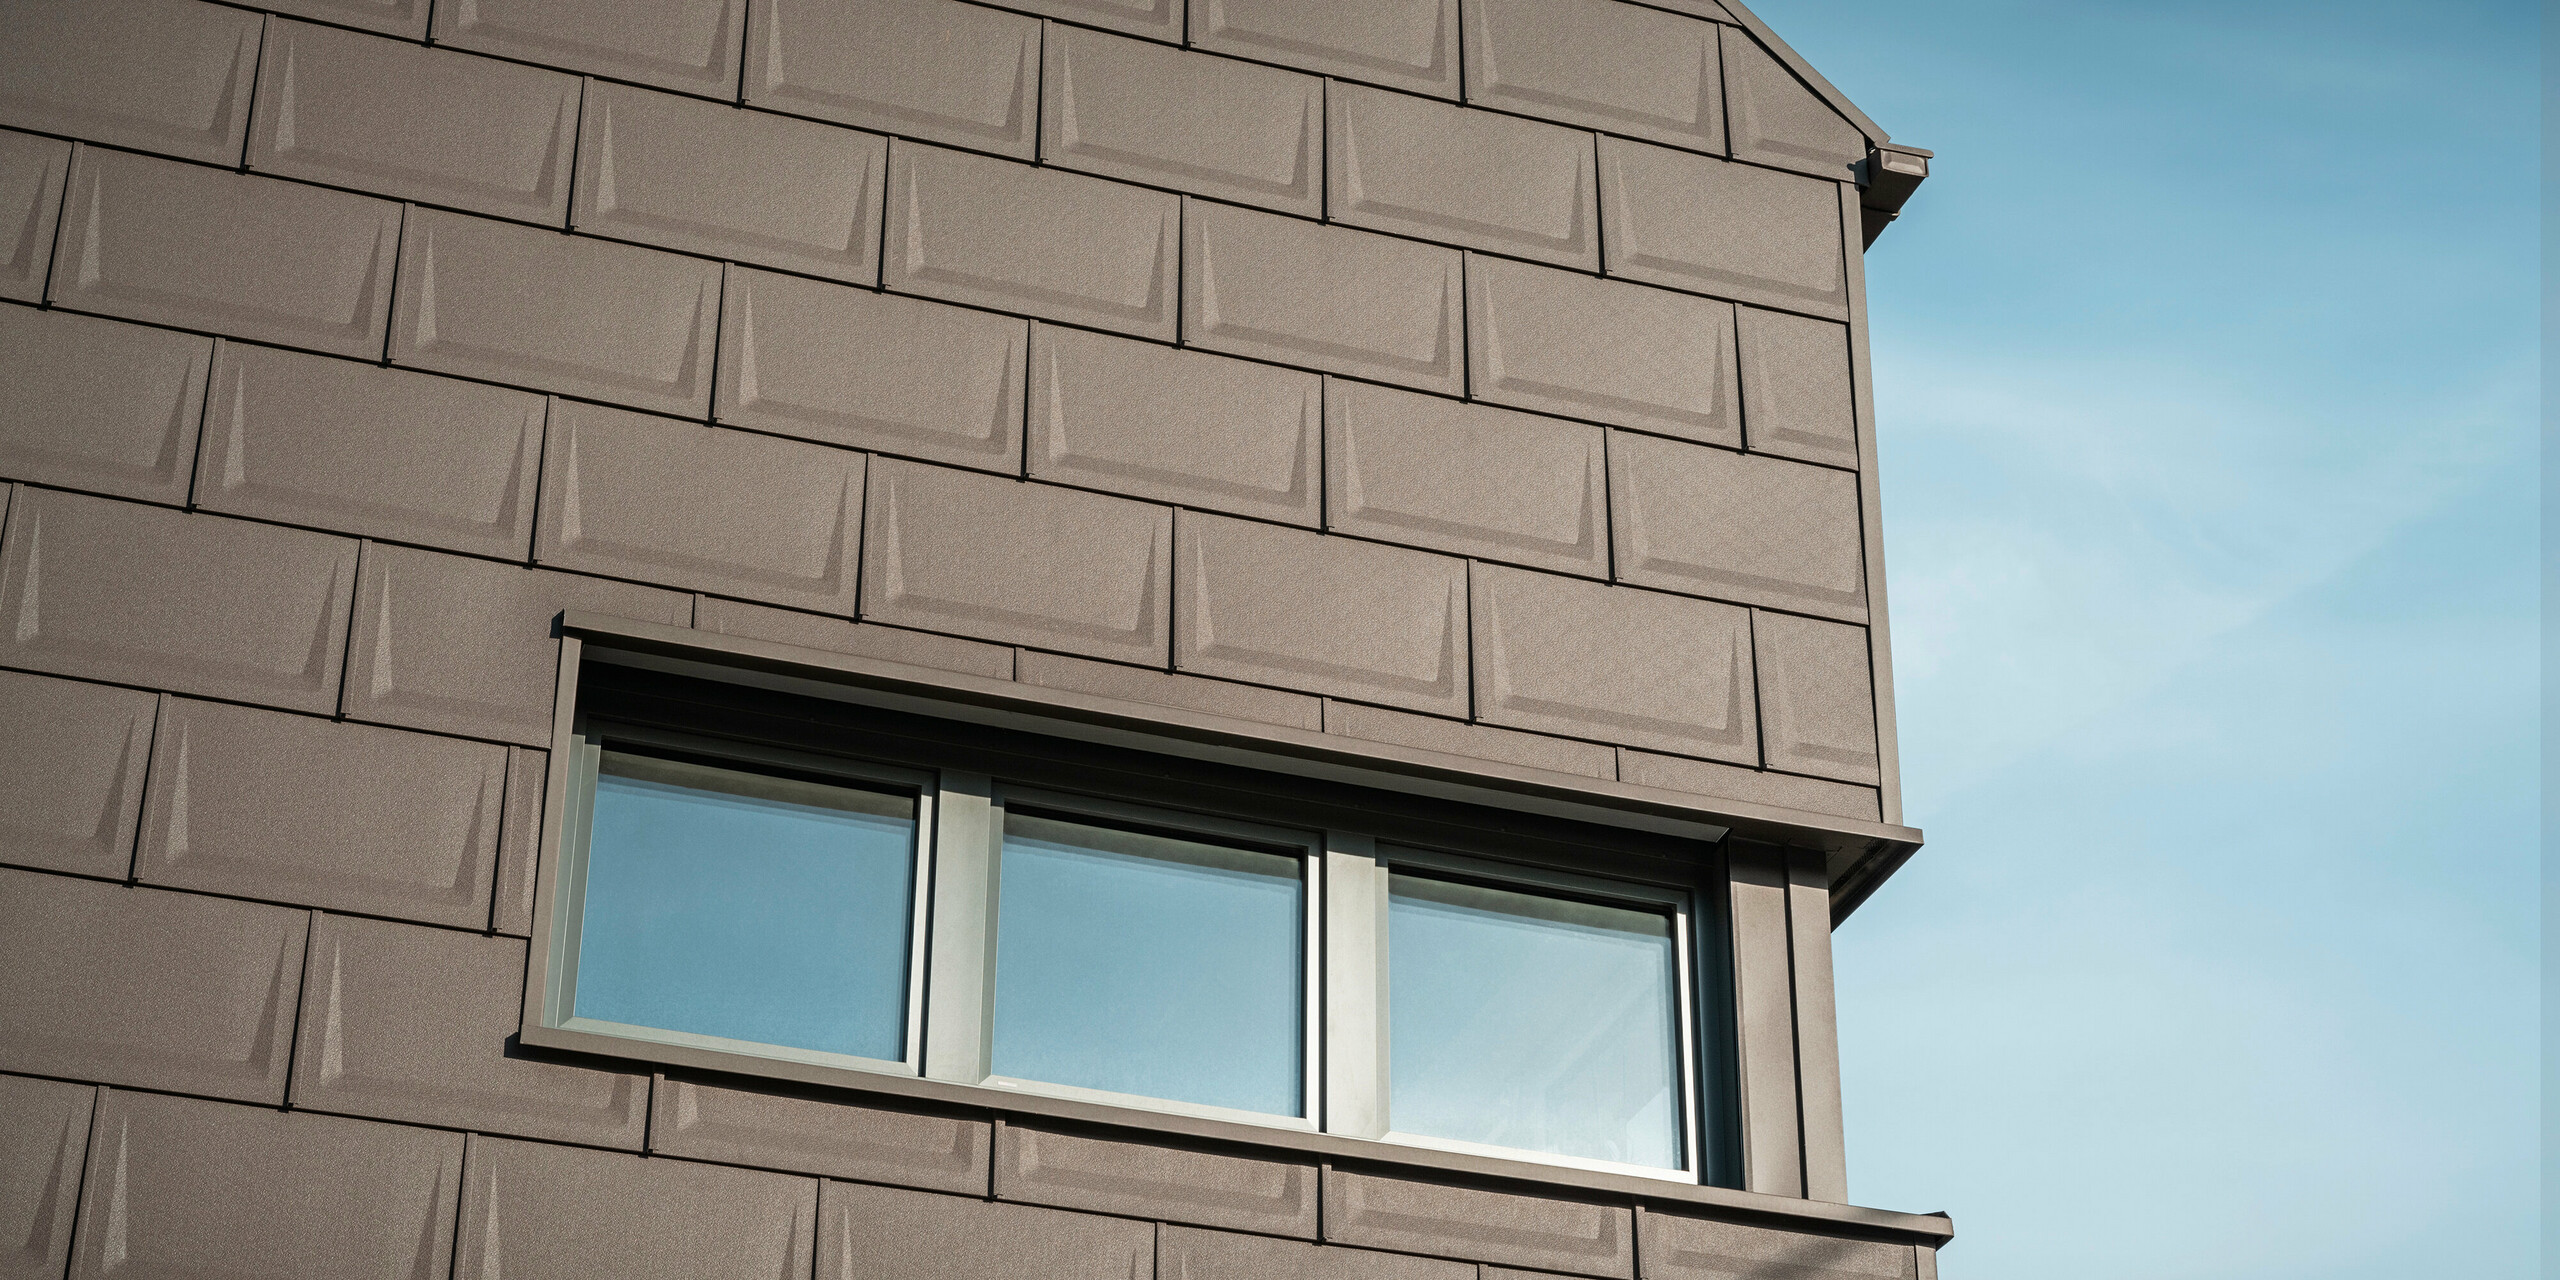 Detailní záběr na fasádu rodinného domu v Neukirchen, Rakousko, navržený s inovativním střešním panelem PREFA R.16 v hnědé P.10, který se používá jako speciální objektové řešení pro střechu i fasádu návrh horního patra. Tato jedinečná aplikace zajišťuje harmonický a estetický vzhled a podtrhuje všestrannost hliníkových výrobků PREFA. Jednotné barevné řešení a promyšlený designový koncept budovy zdůrazňují všestranné designové možnosti PREFA.